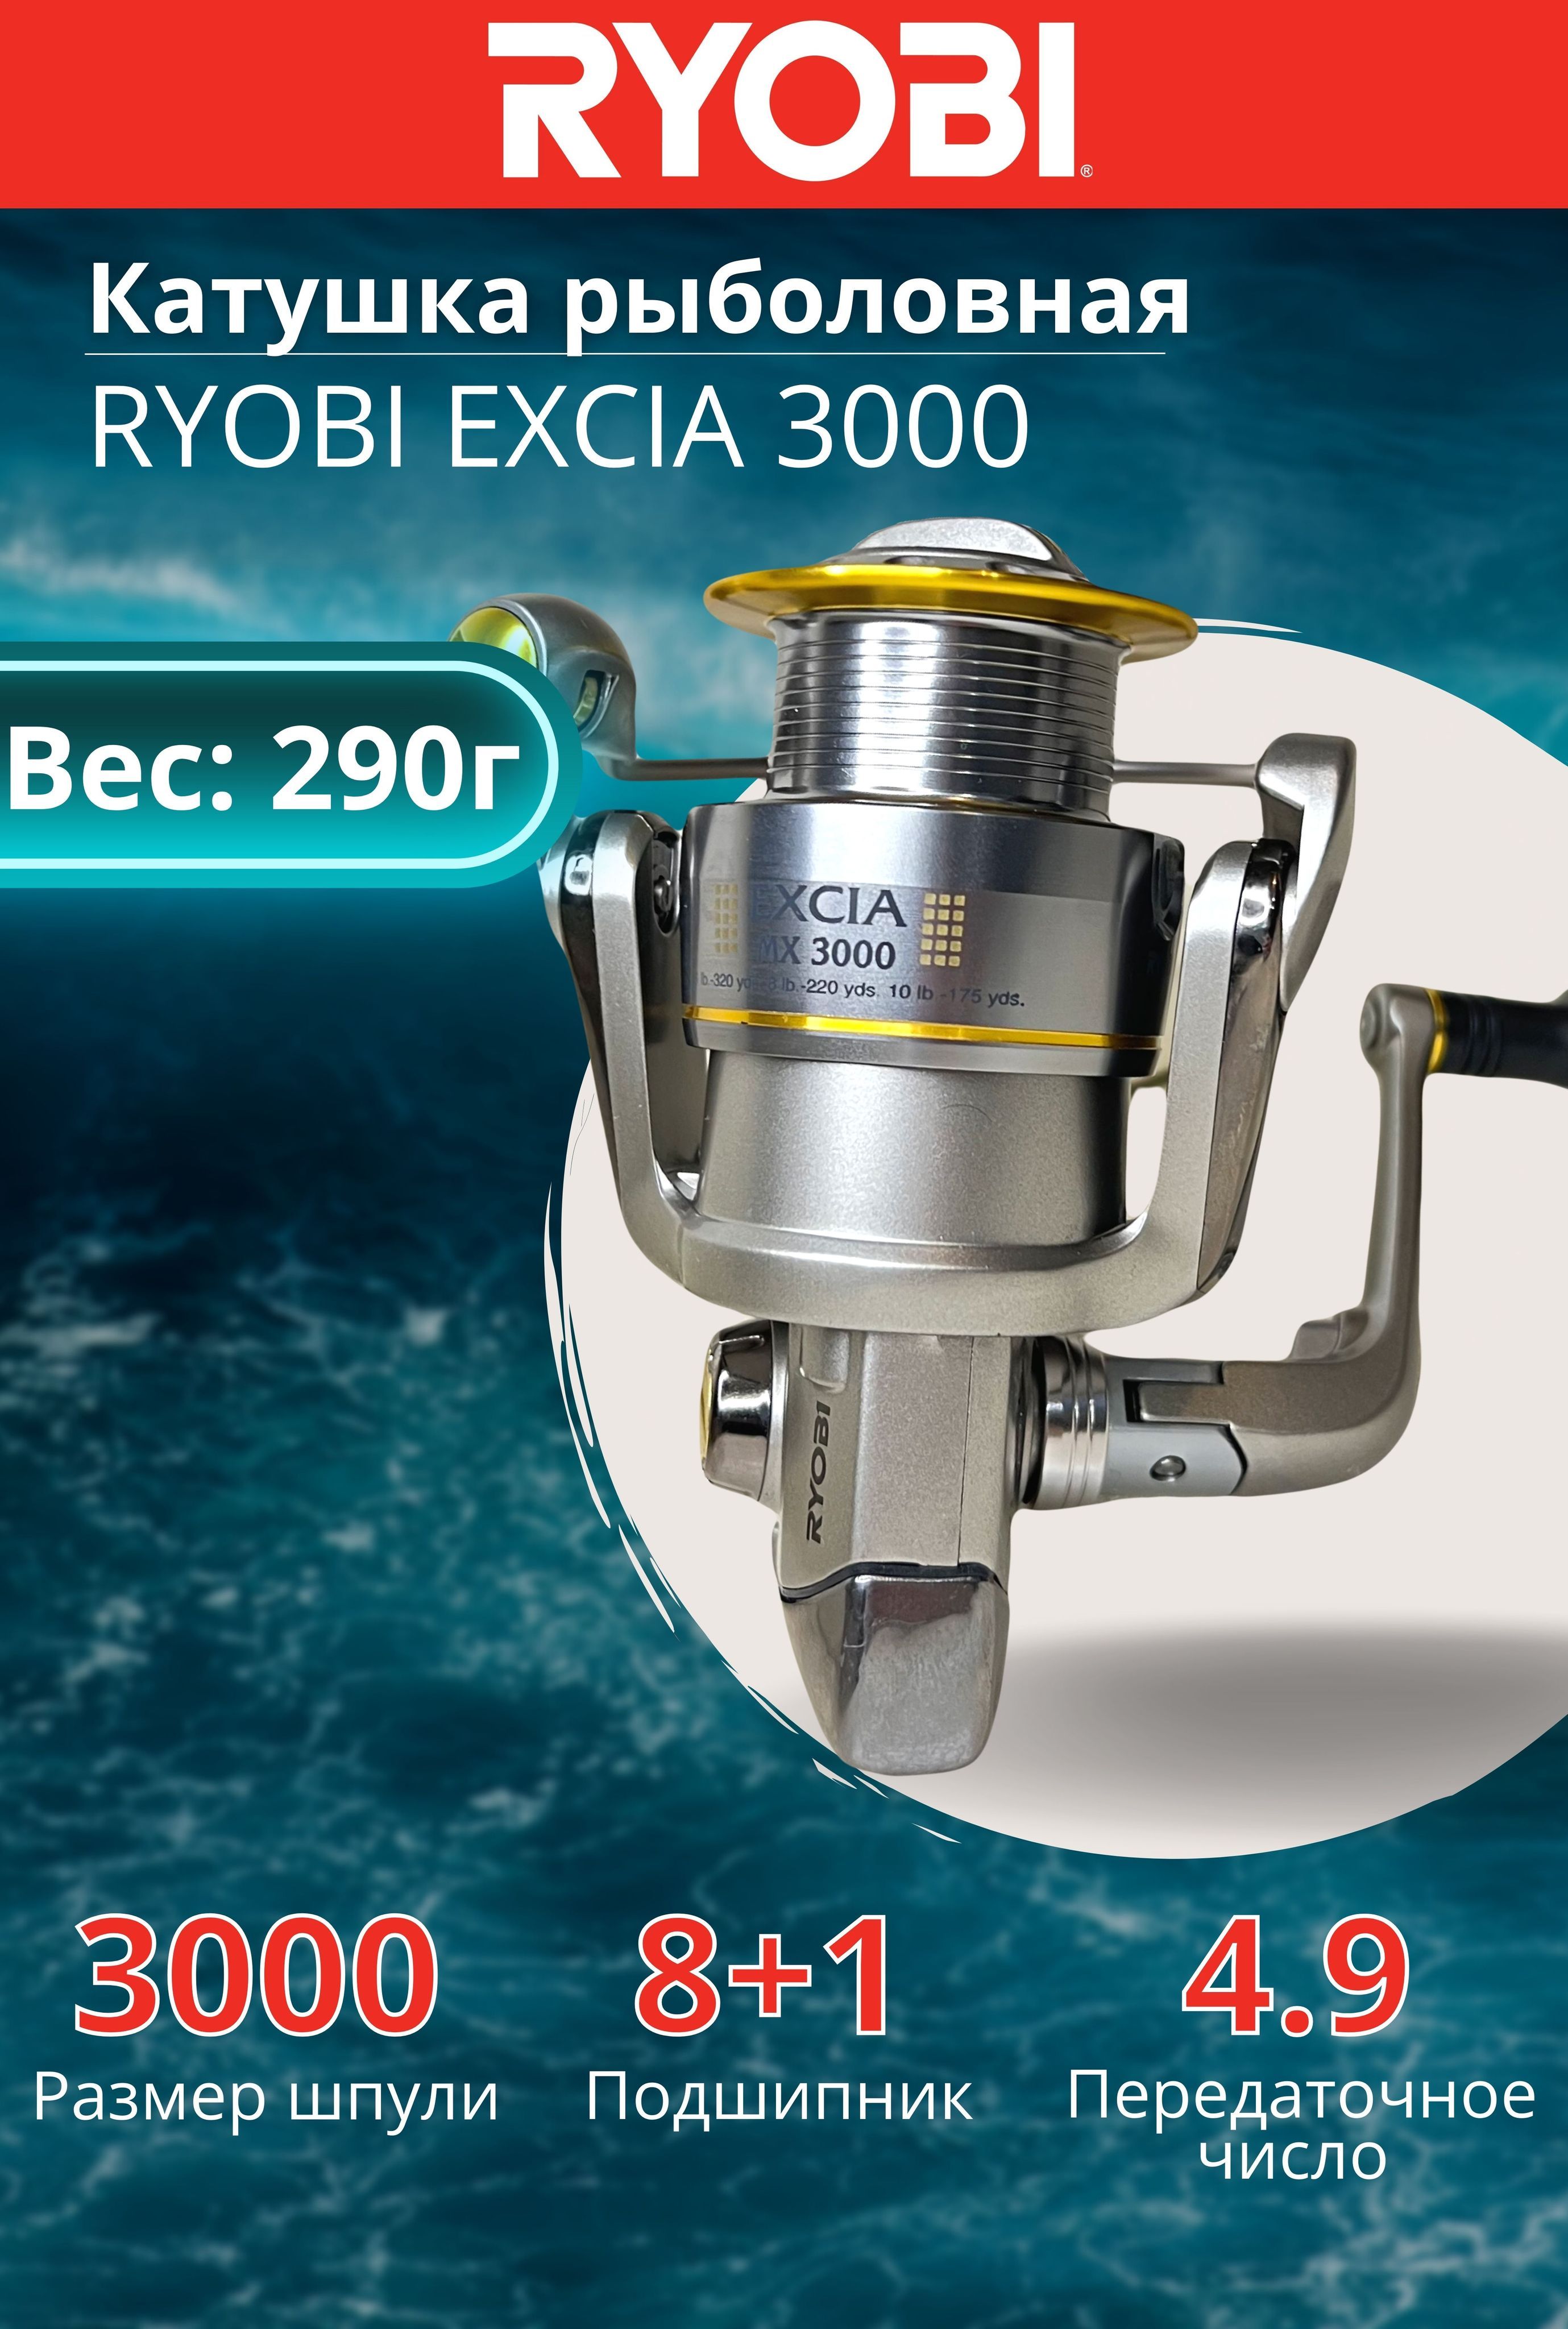 Катушка Ryobi Excia MX 3000 - подробное описание и характеристики